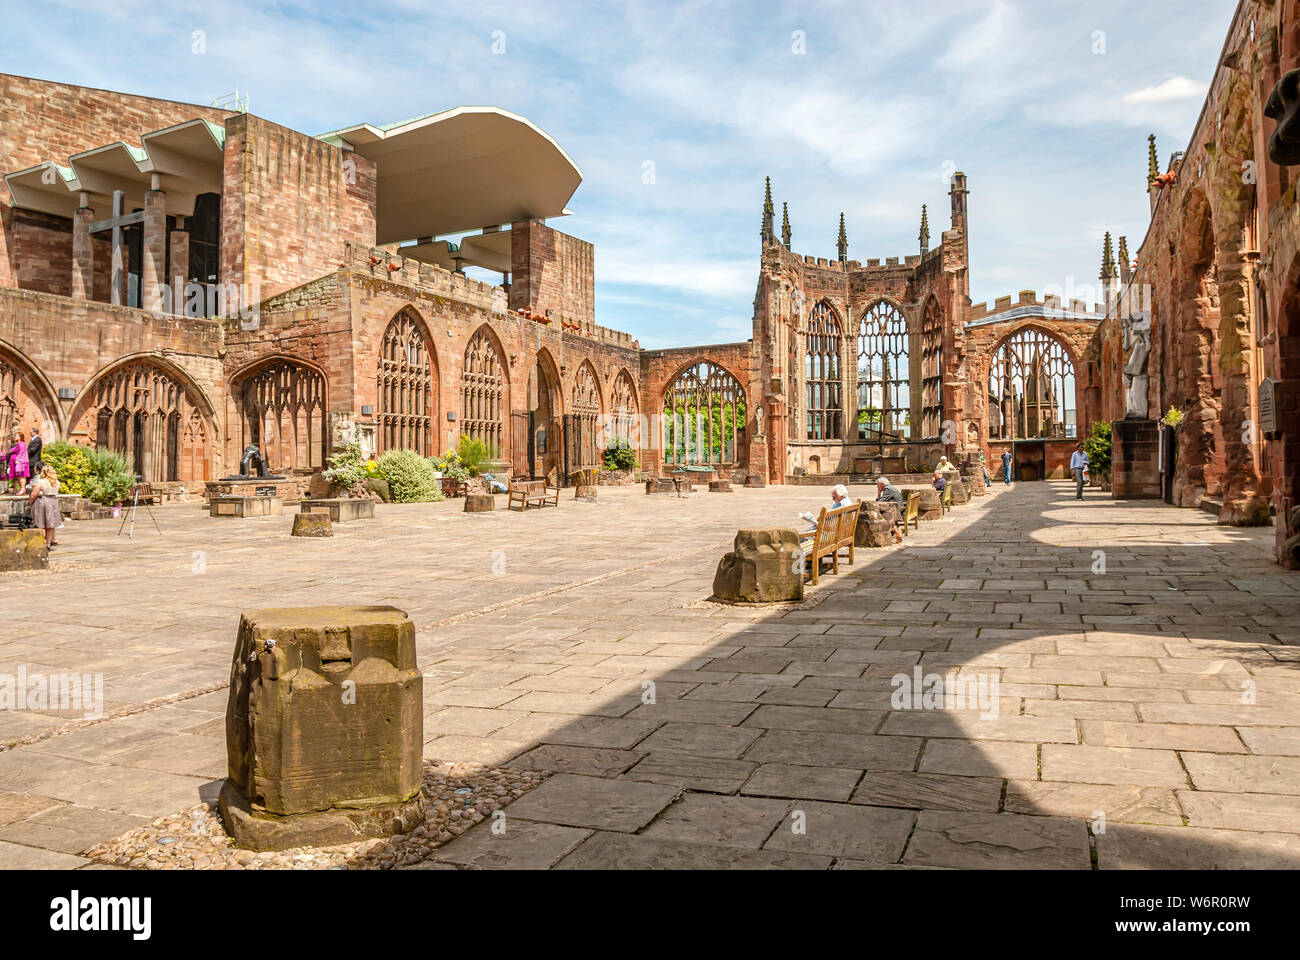 Ruines de la cathédrale de Coventry, également connue sous le nom de cathédrale Saint-Michel, West Midlands, Angleterre Banque D'Images